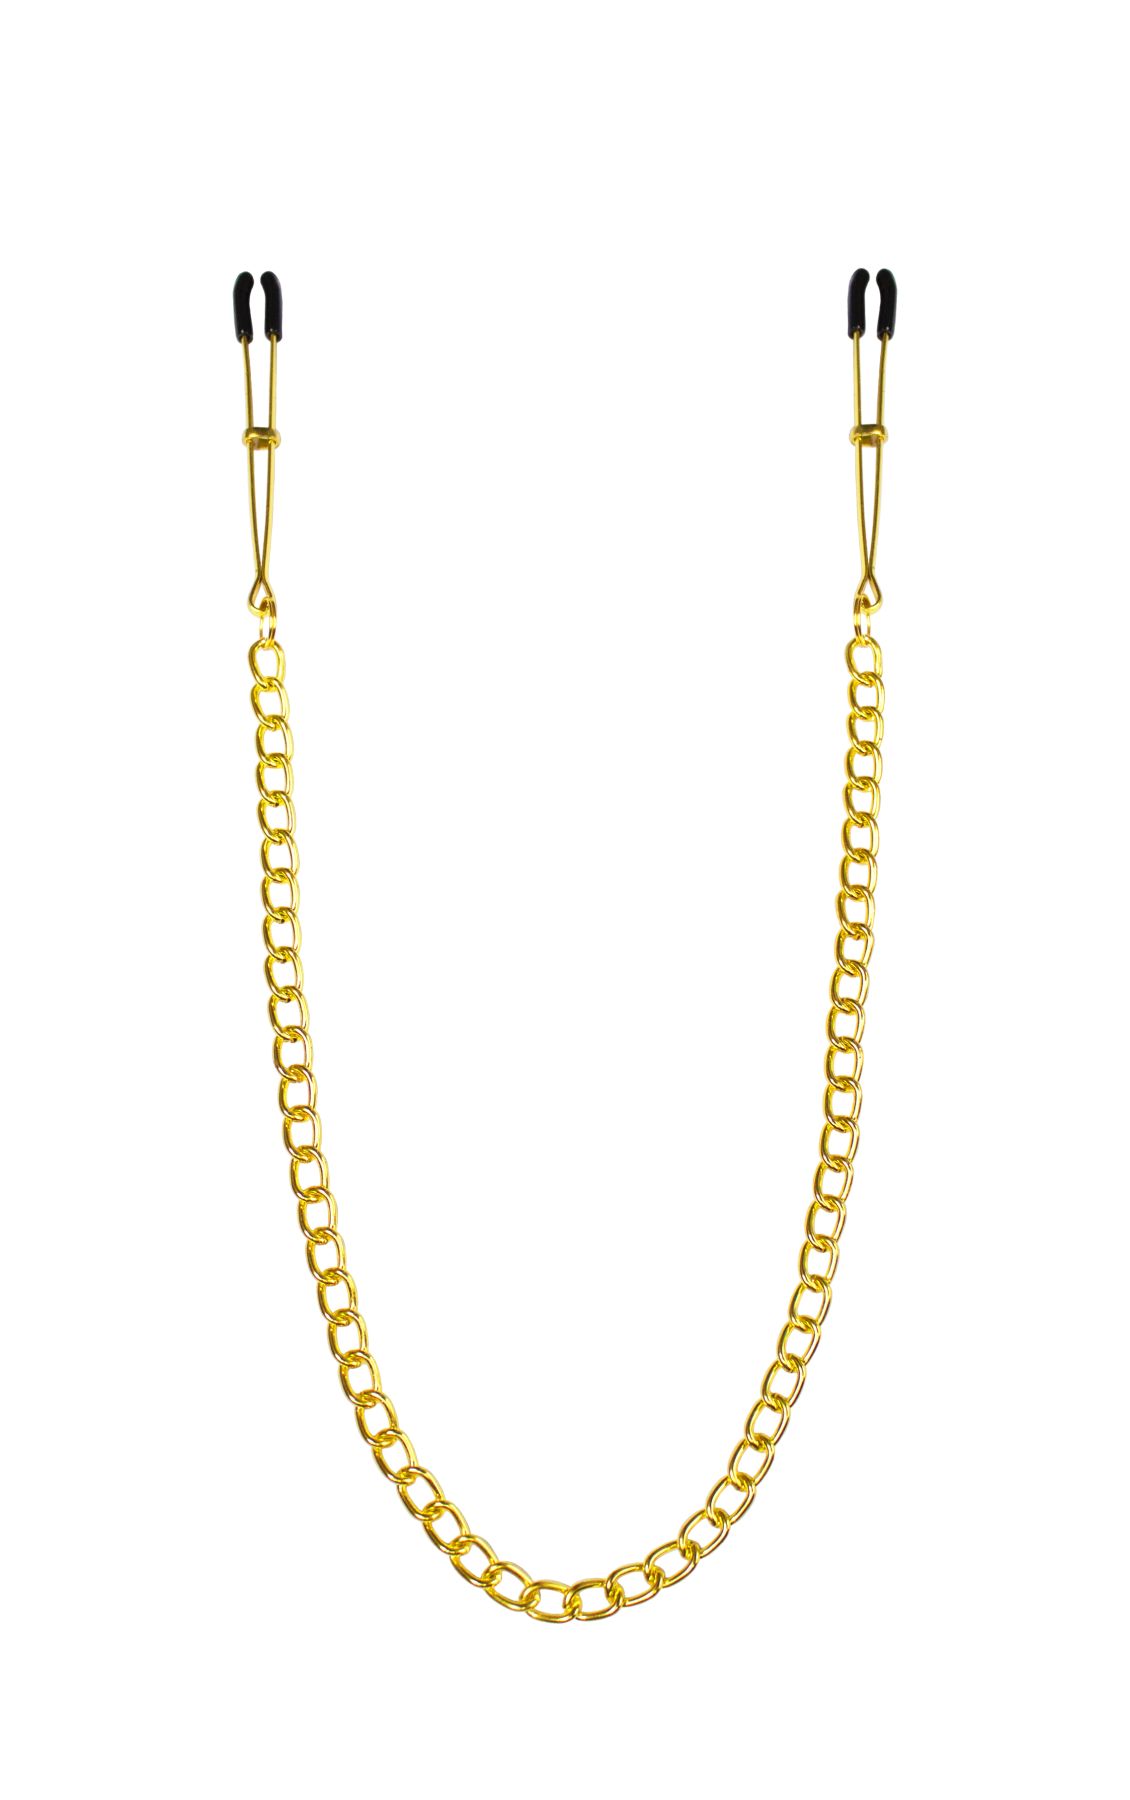 Тонкие зажимы для сосков с цепочкой Feral Feelings - Chain Thin nipple clamps, золото/черн�ый